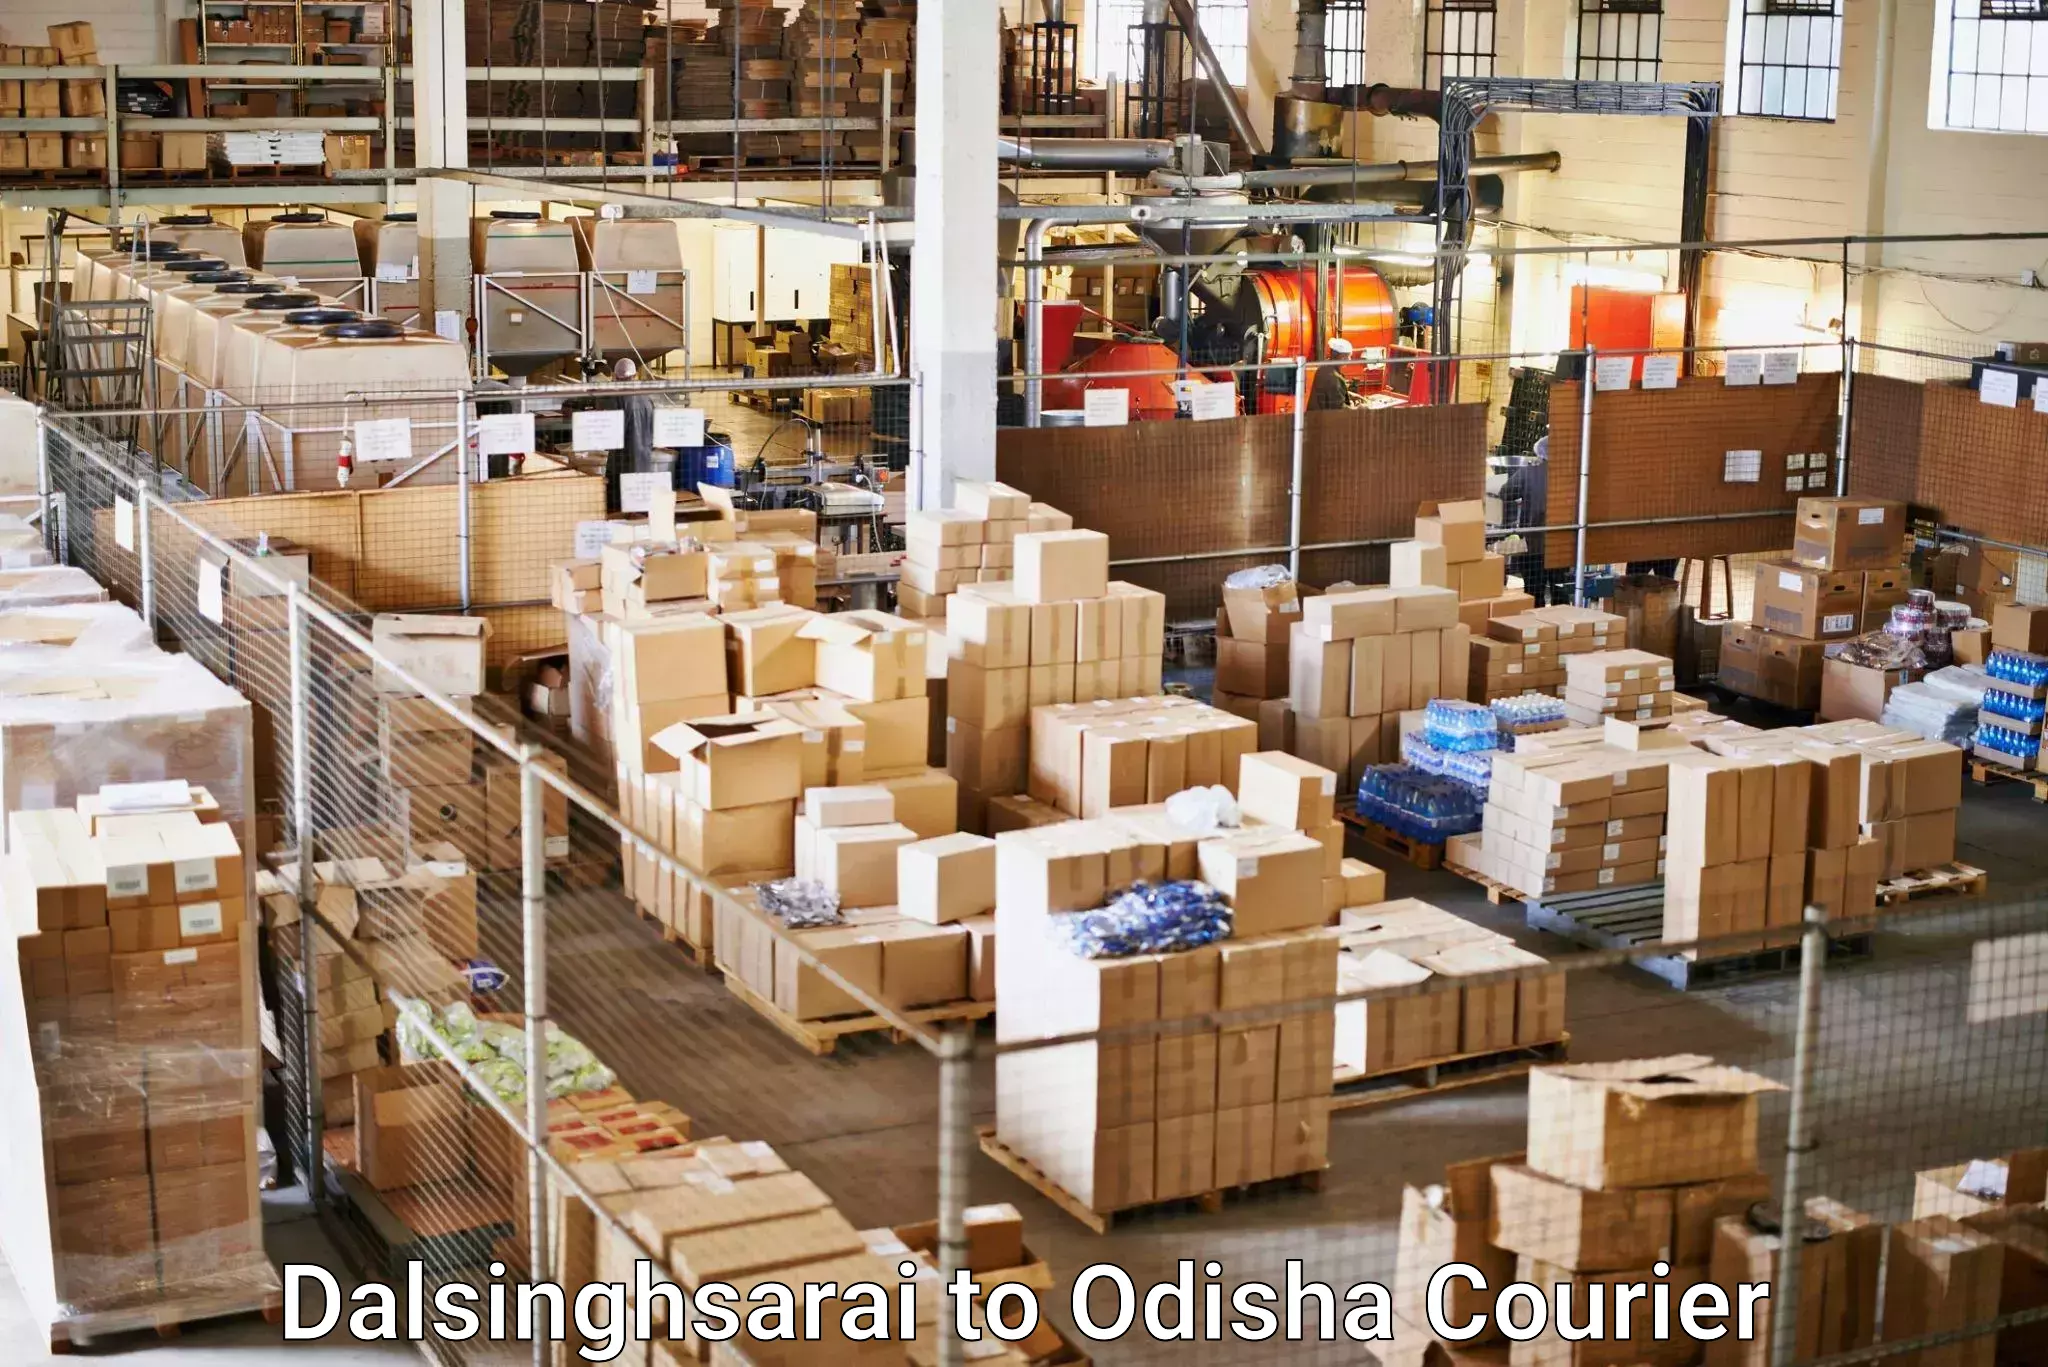 Efficient order fulfillment in Dalsinghsarai to Daspalla